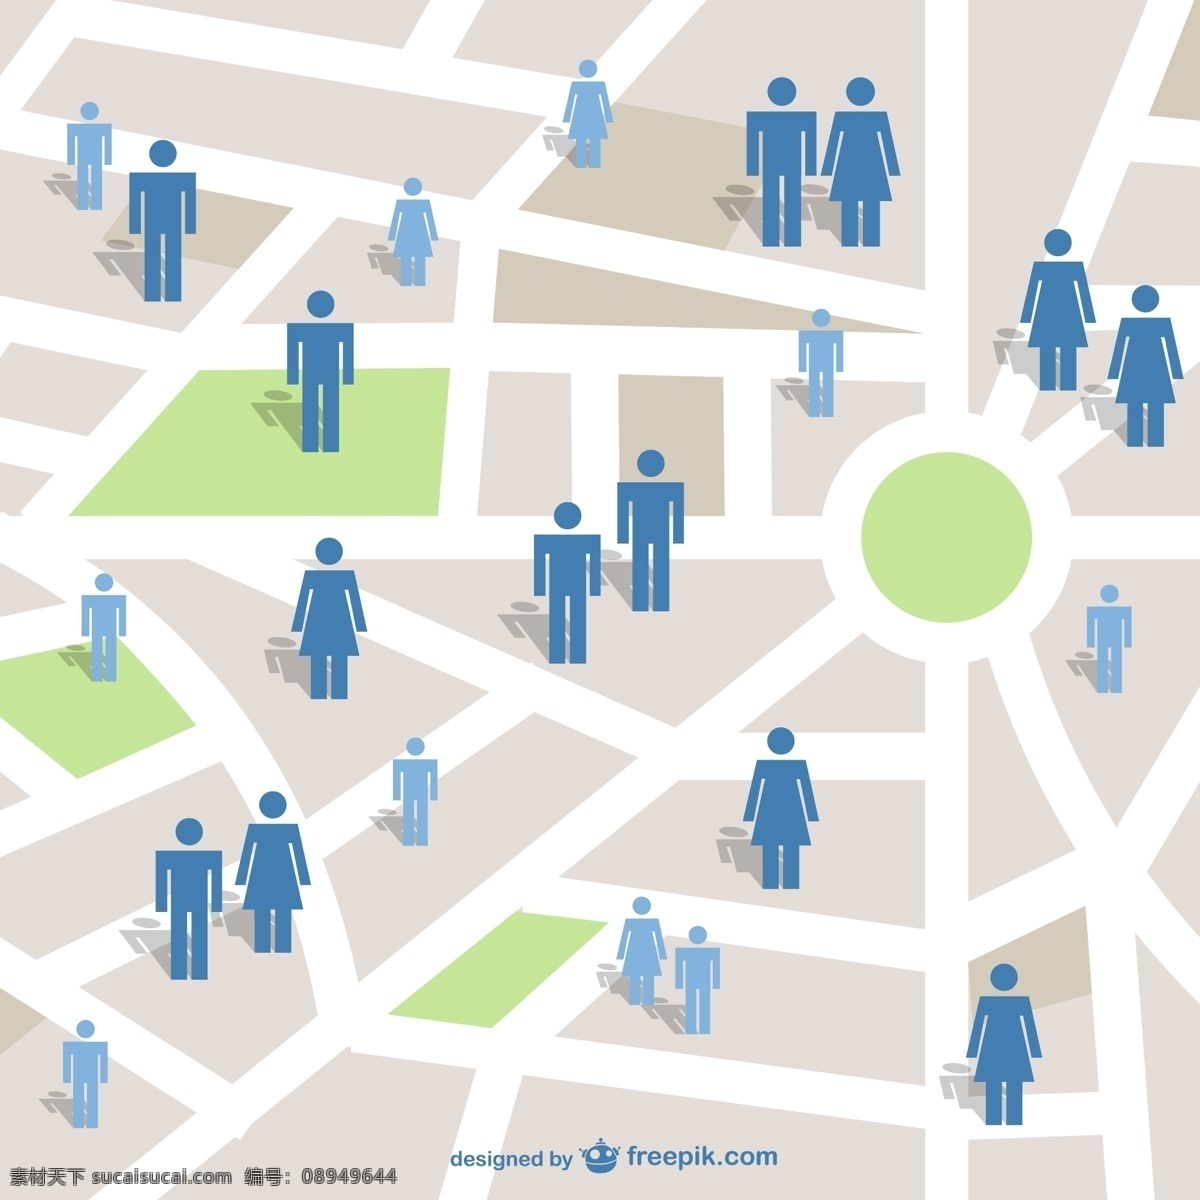 人 连接 概念 向量 城市 社会媒体 地图 社会 互联网 平面 网络 传播 街道 位置 媒体 社会网络 符号 形象 白色